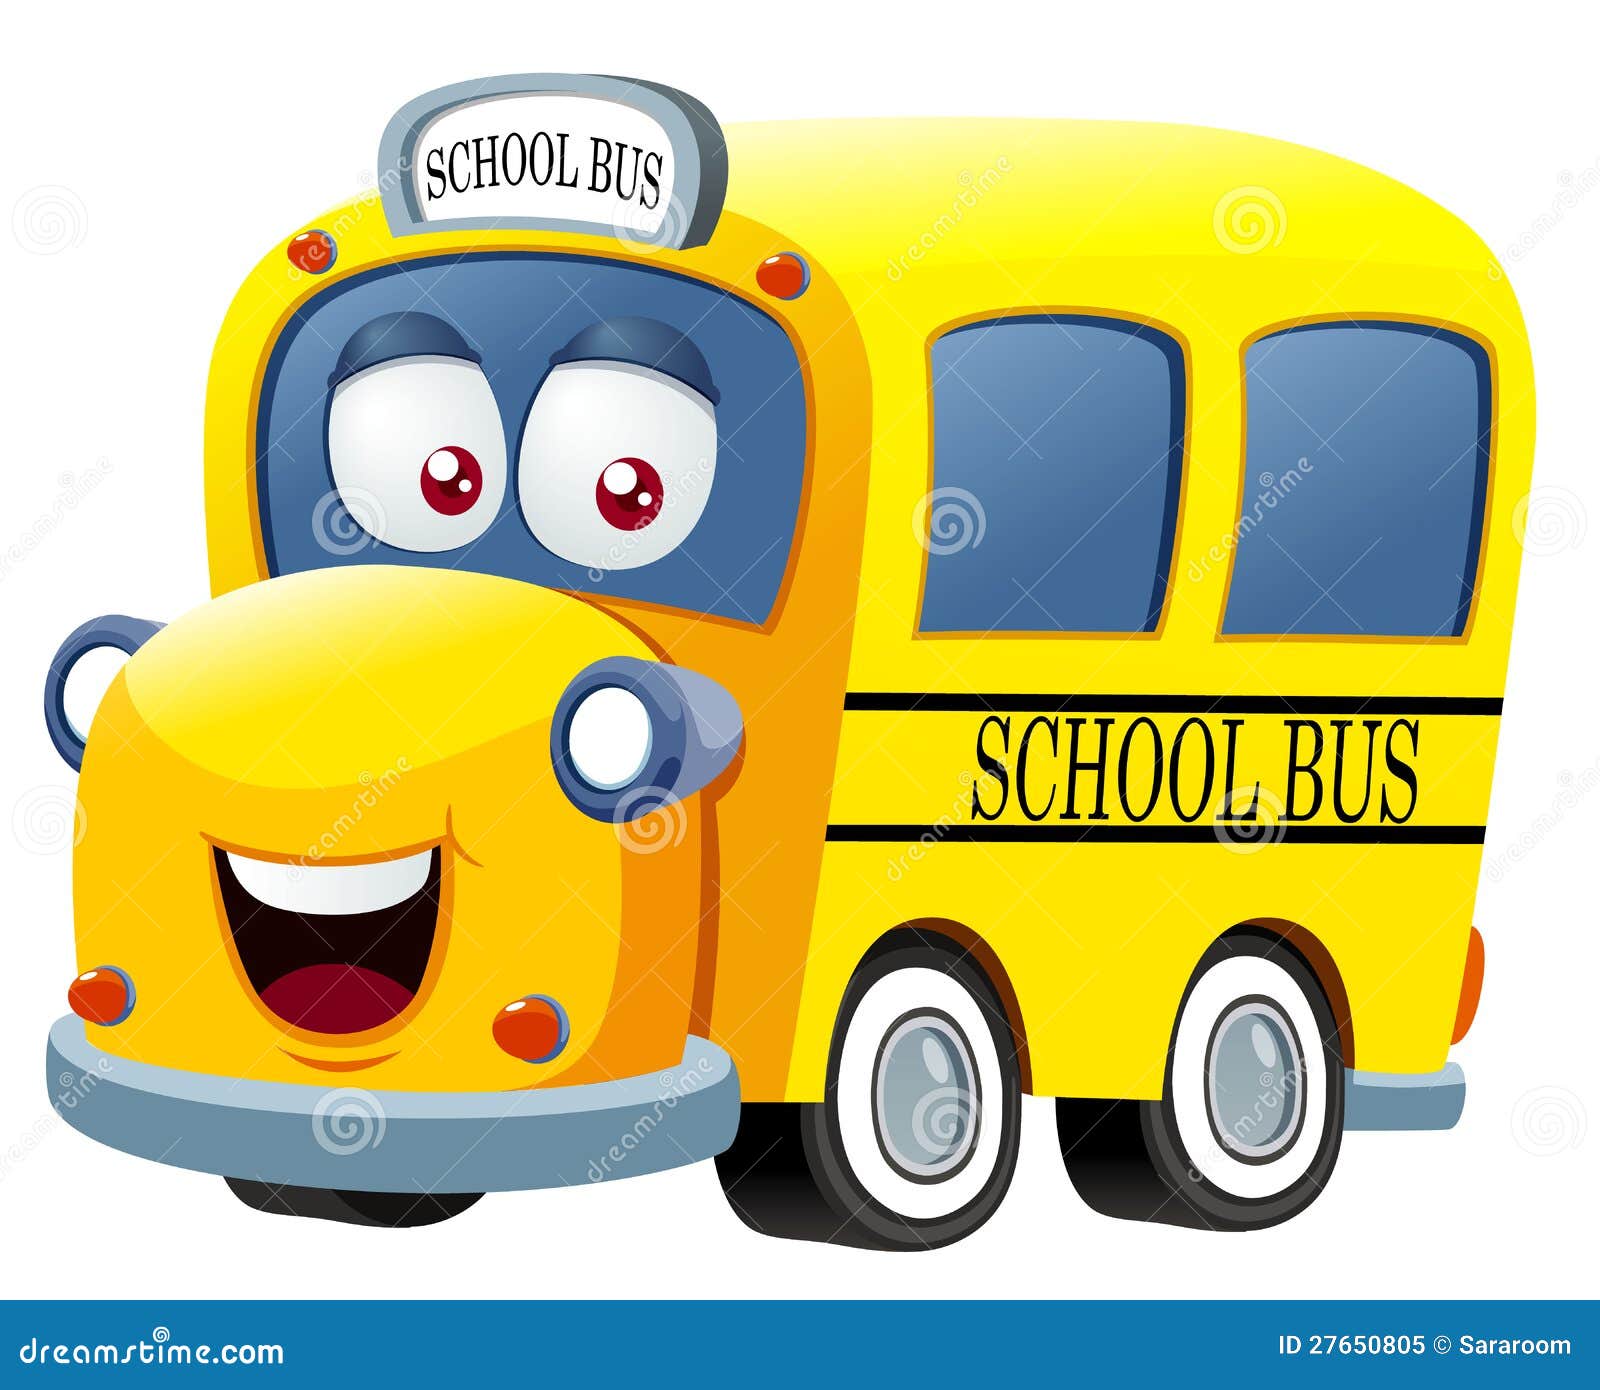 School bus cartoon stock vector. Illustration of cartoon - 27650805